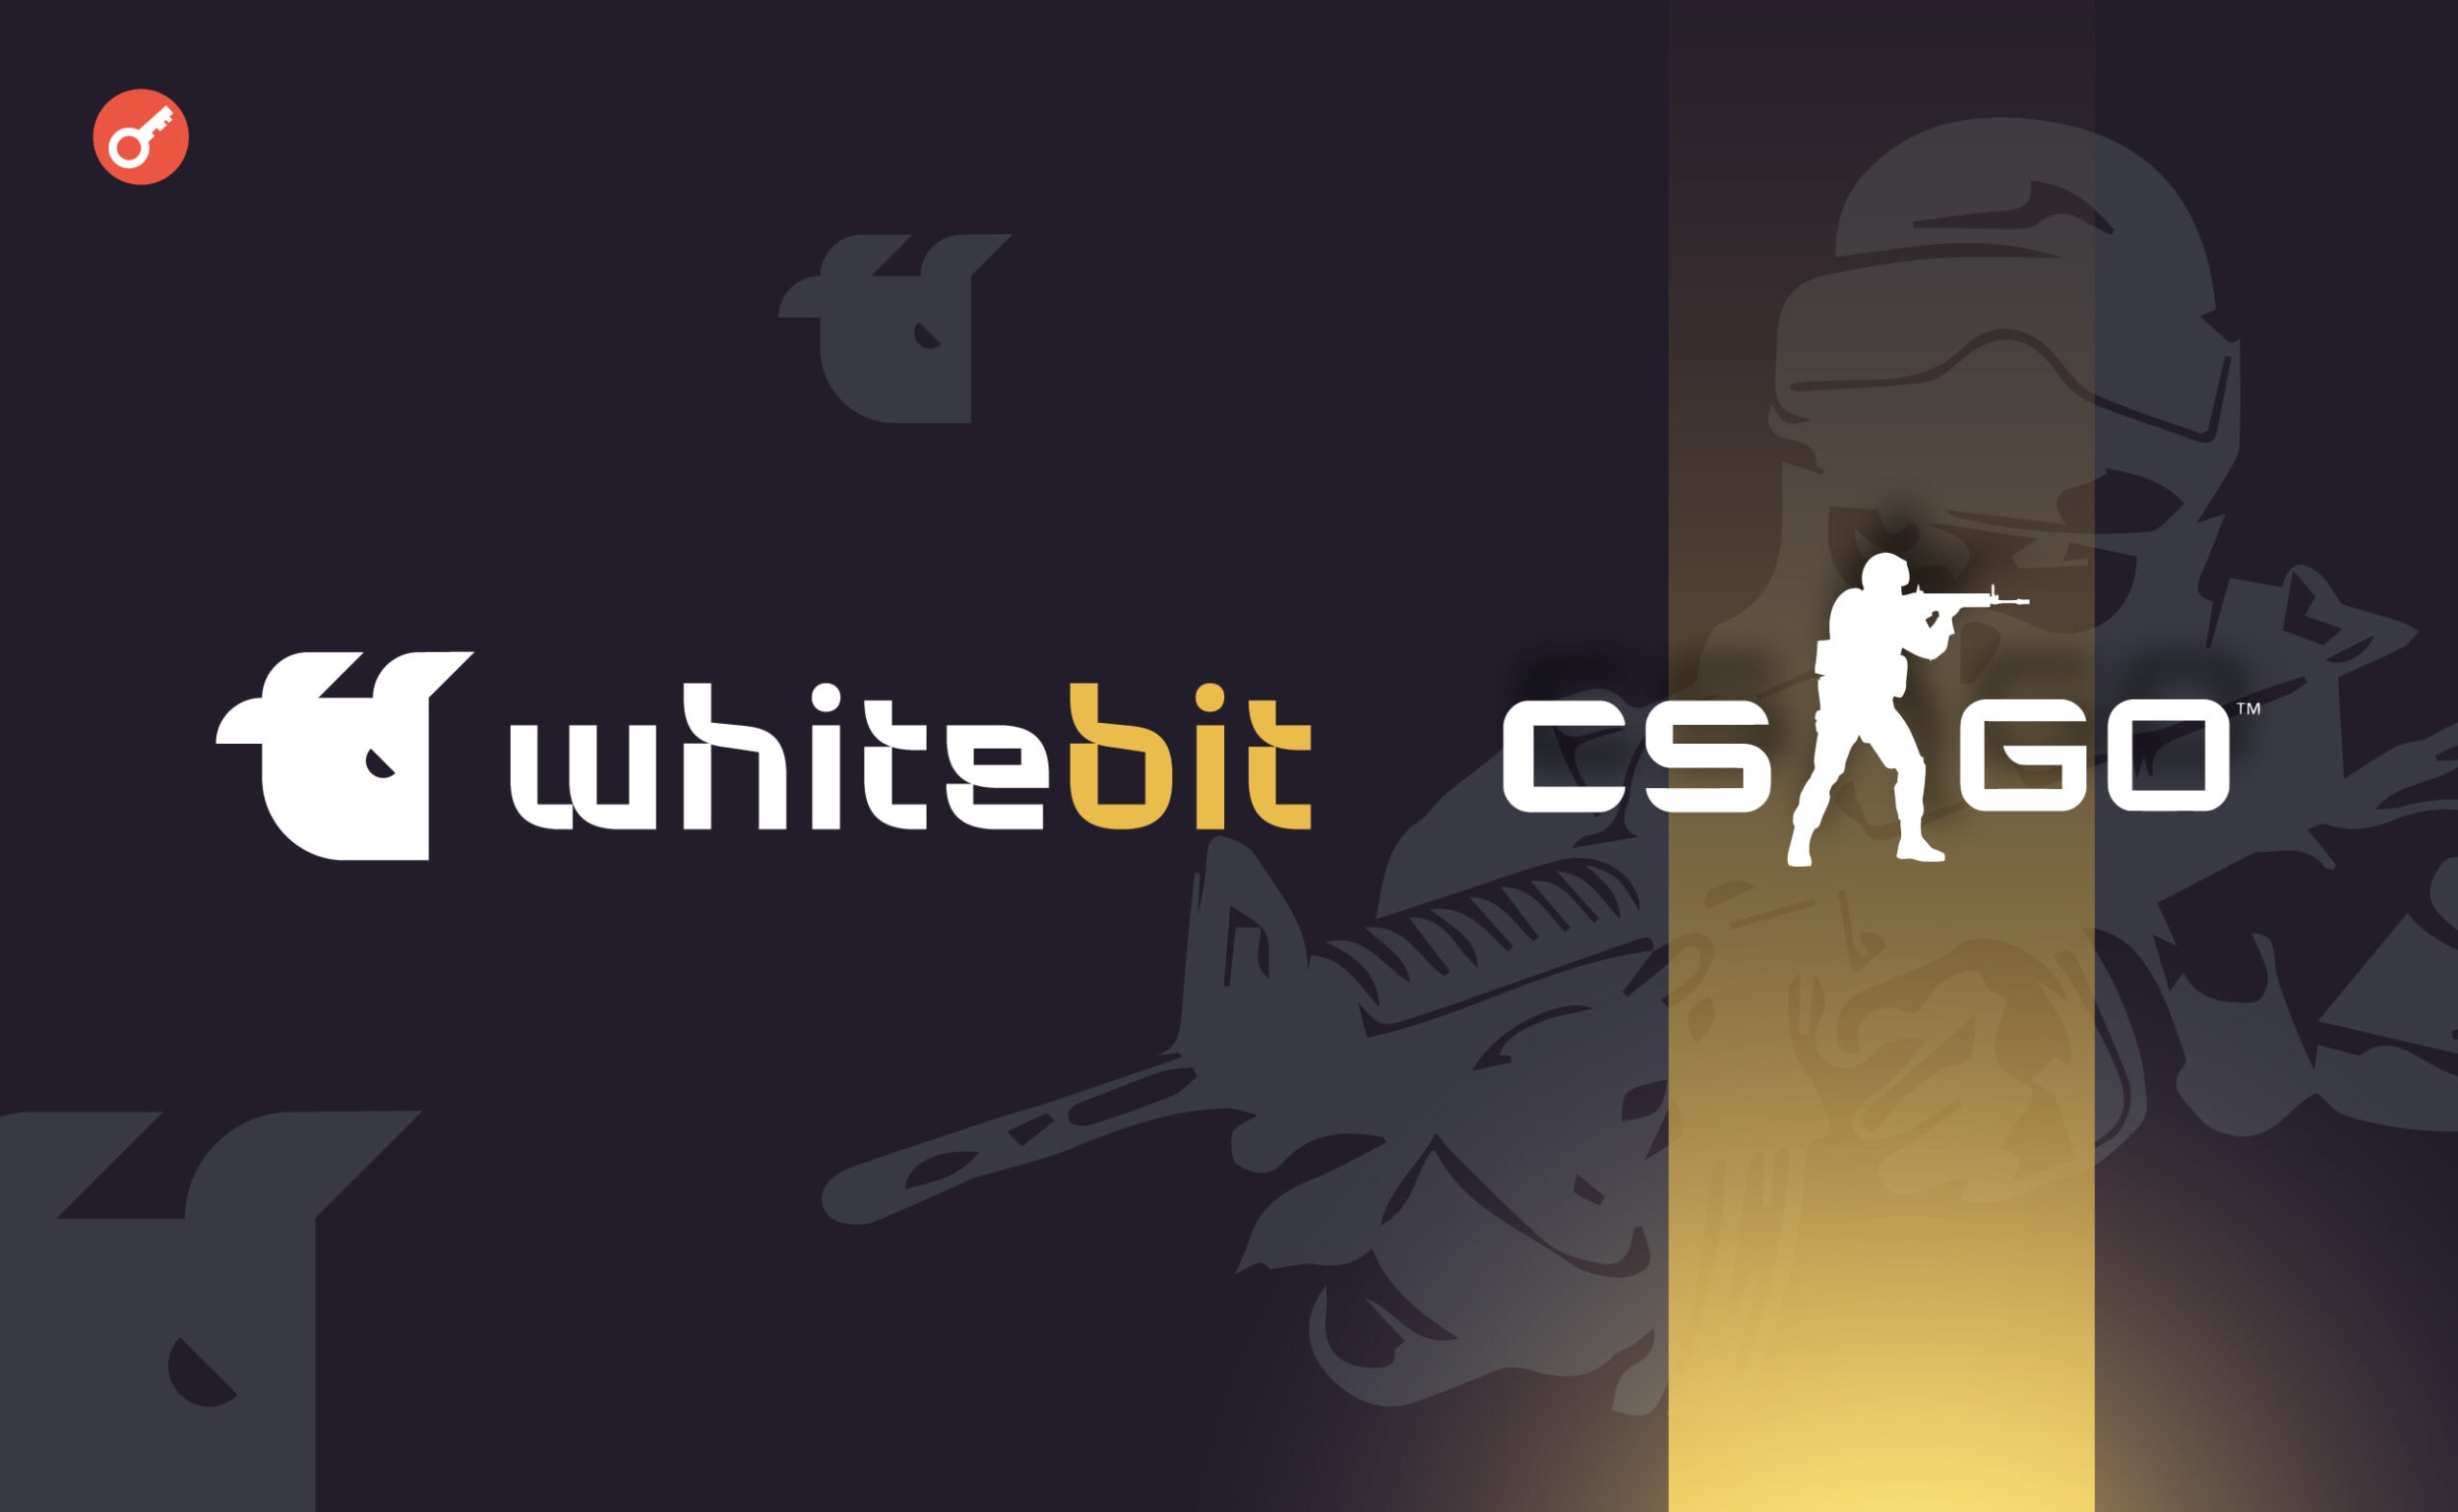 WhiteBIT объявила о турнире по CS:GO с наградами в криптовалюте. Заглавный коллаж новости.